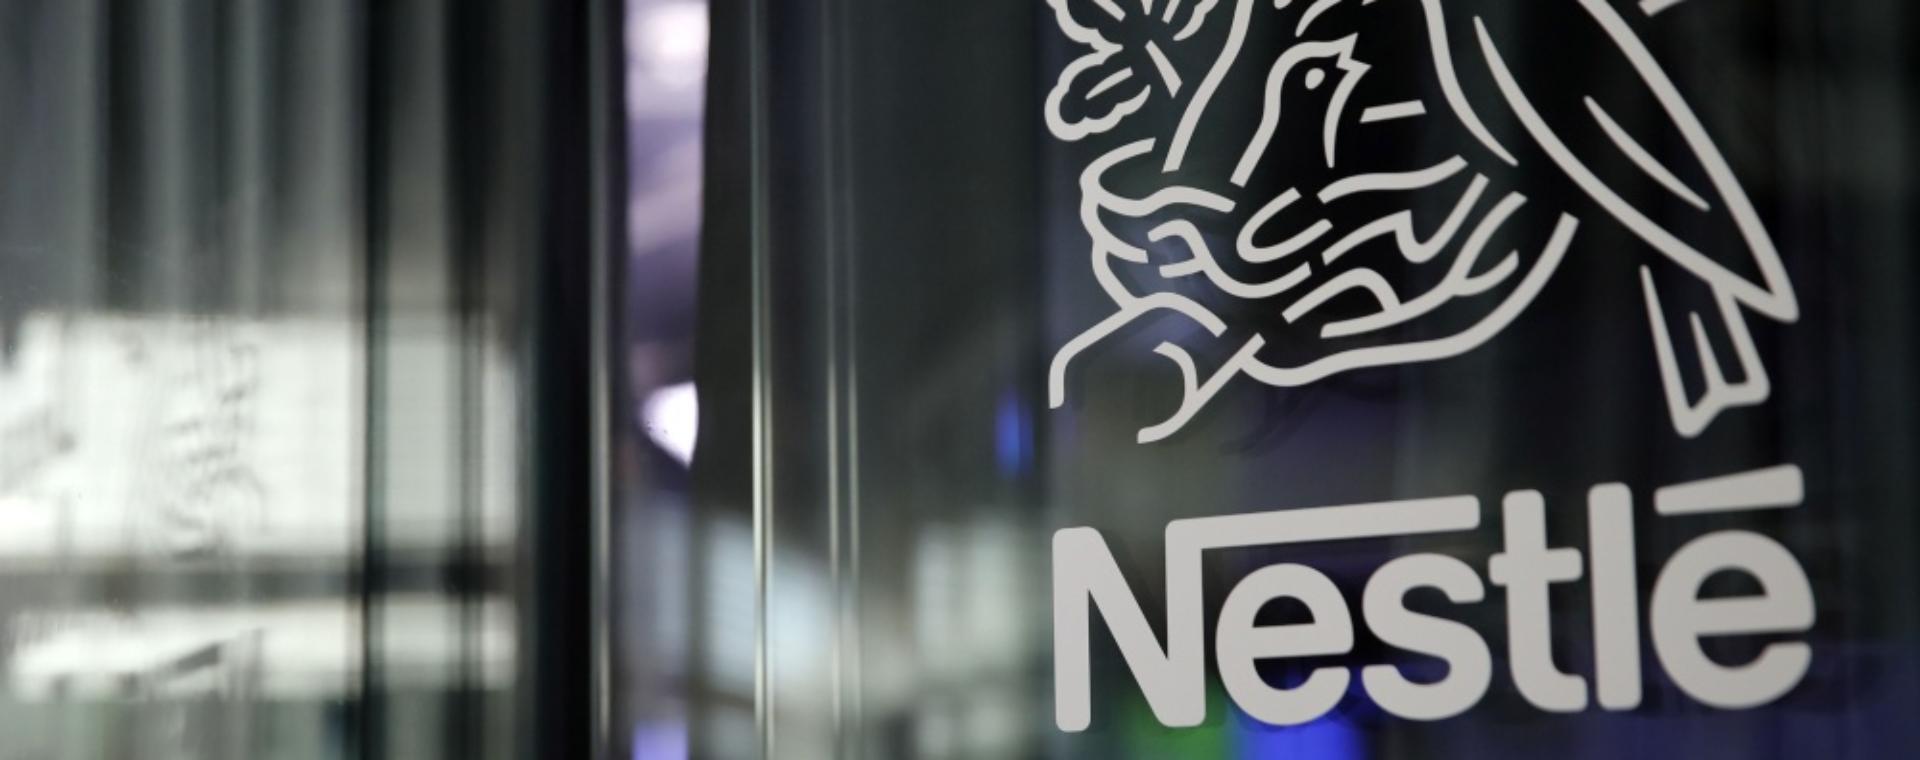 Logo Nestle di kantor pusat Nestle SA di Vevey, Swiss, pada Selasa (12/2/2019).Bloomberg/Stefan Wermuth. Produk Sawit Astra Agro (AALI) Terancam Diblokir oleh Nestle